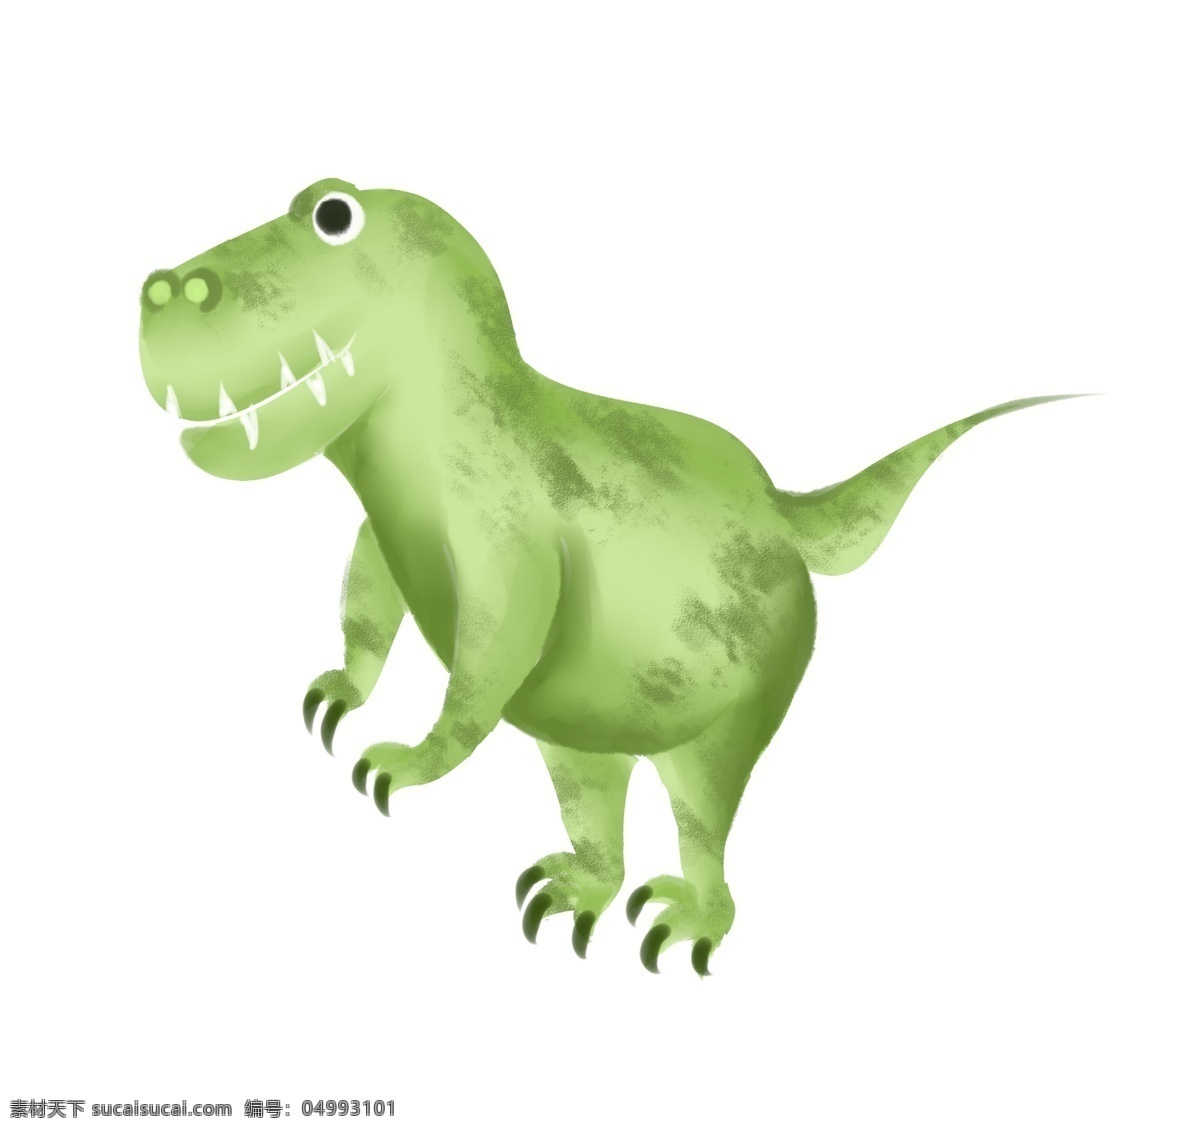 卡通 绿色 小 恐龙 绿色的小恐龙 可爱恐龙 牙齿 小动物 小清新 卡通动物 爪子 尾巴 恐龙世界